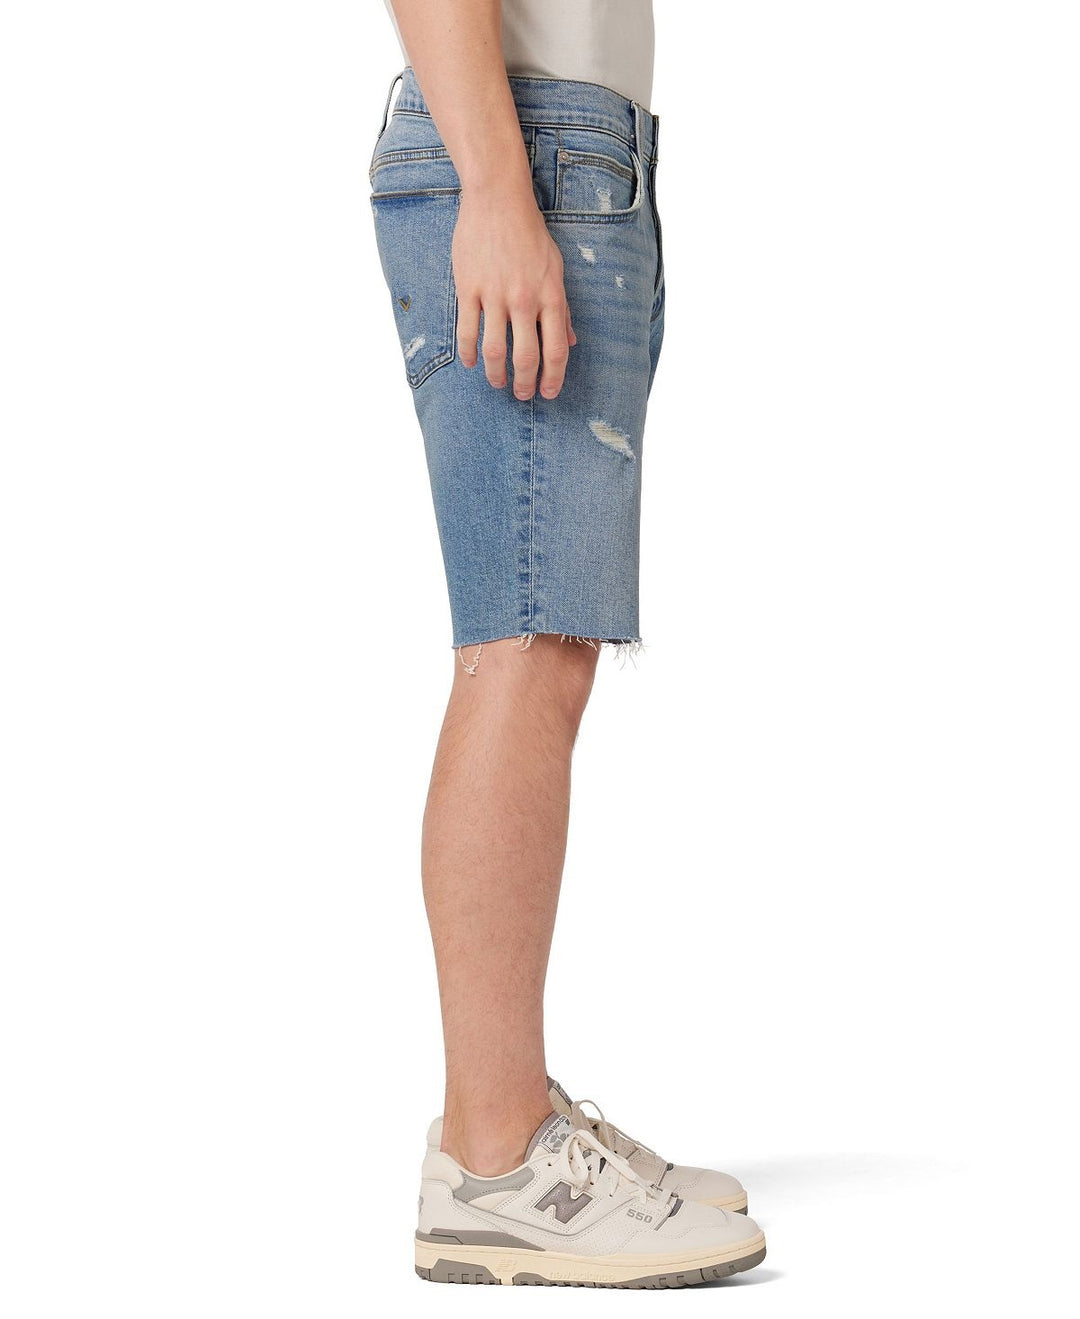 Hdsn Men's Jett Shorts Blue Size 40